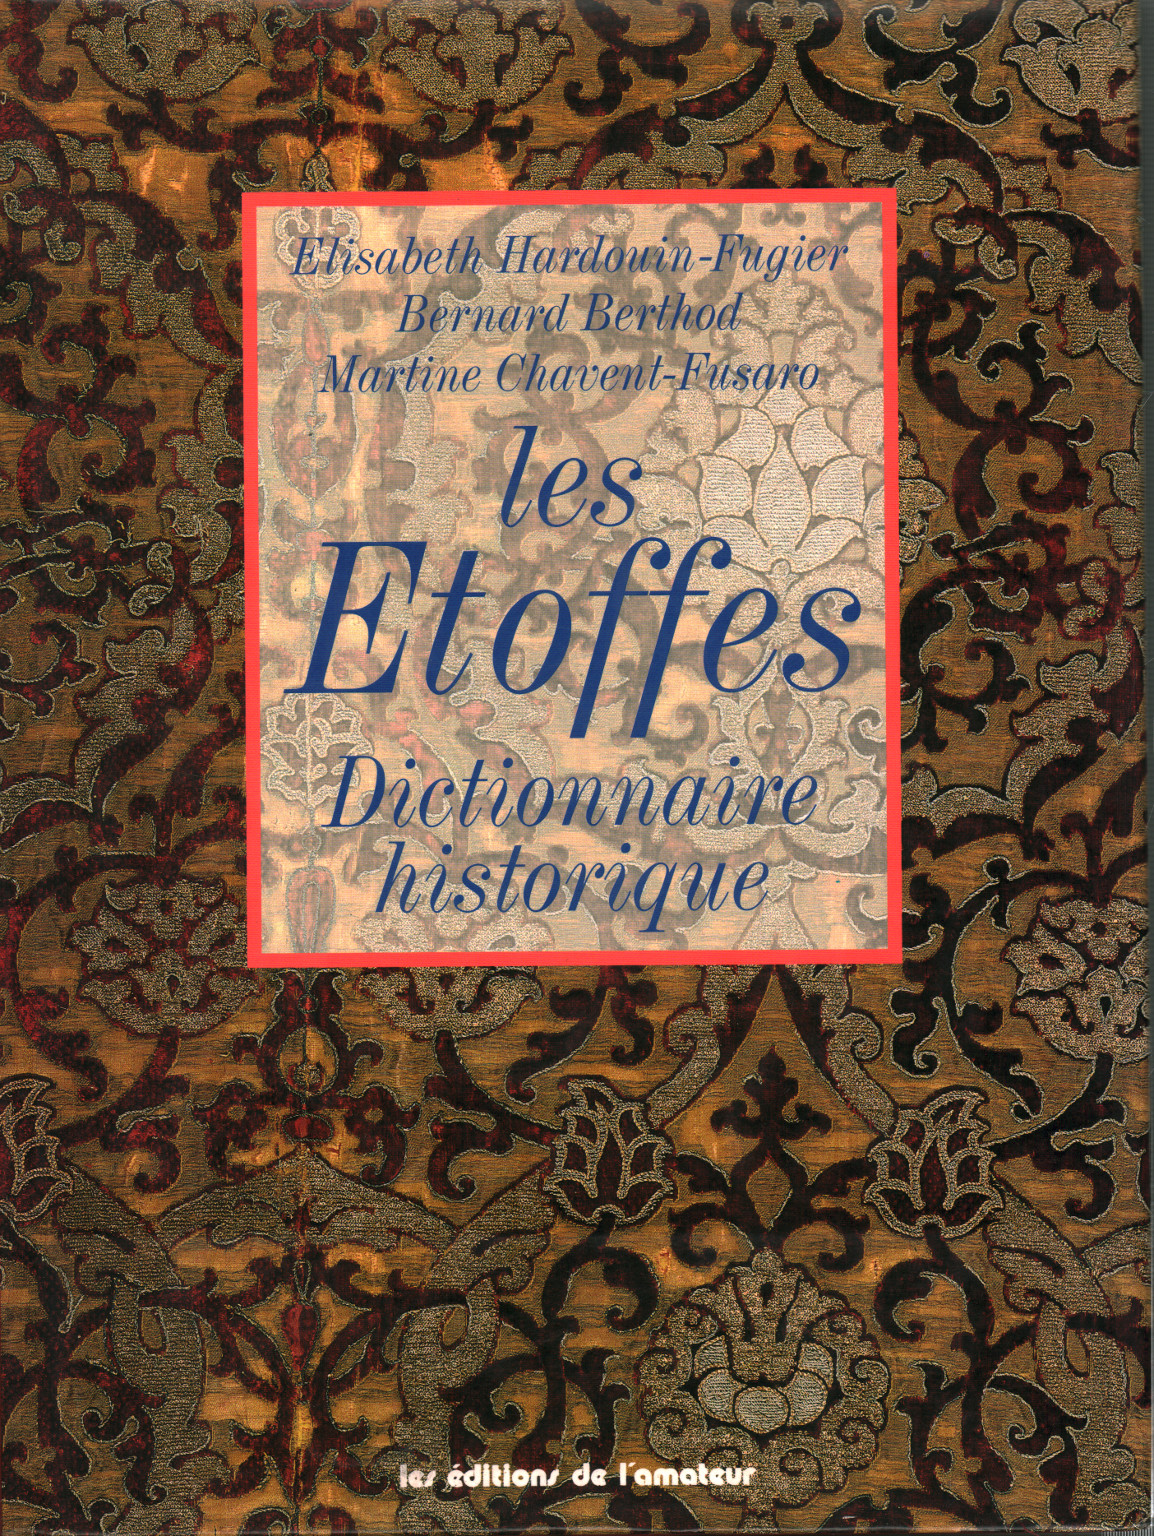 Les Etoffes. Dictionnaire historique, s.un.